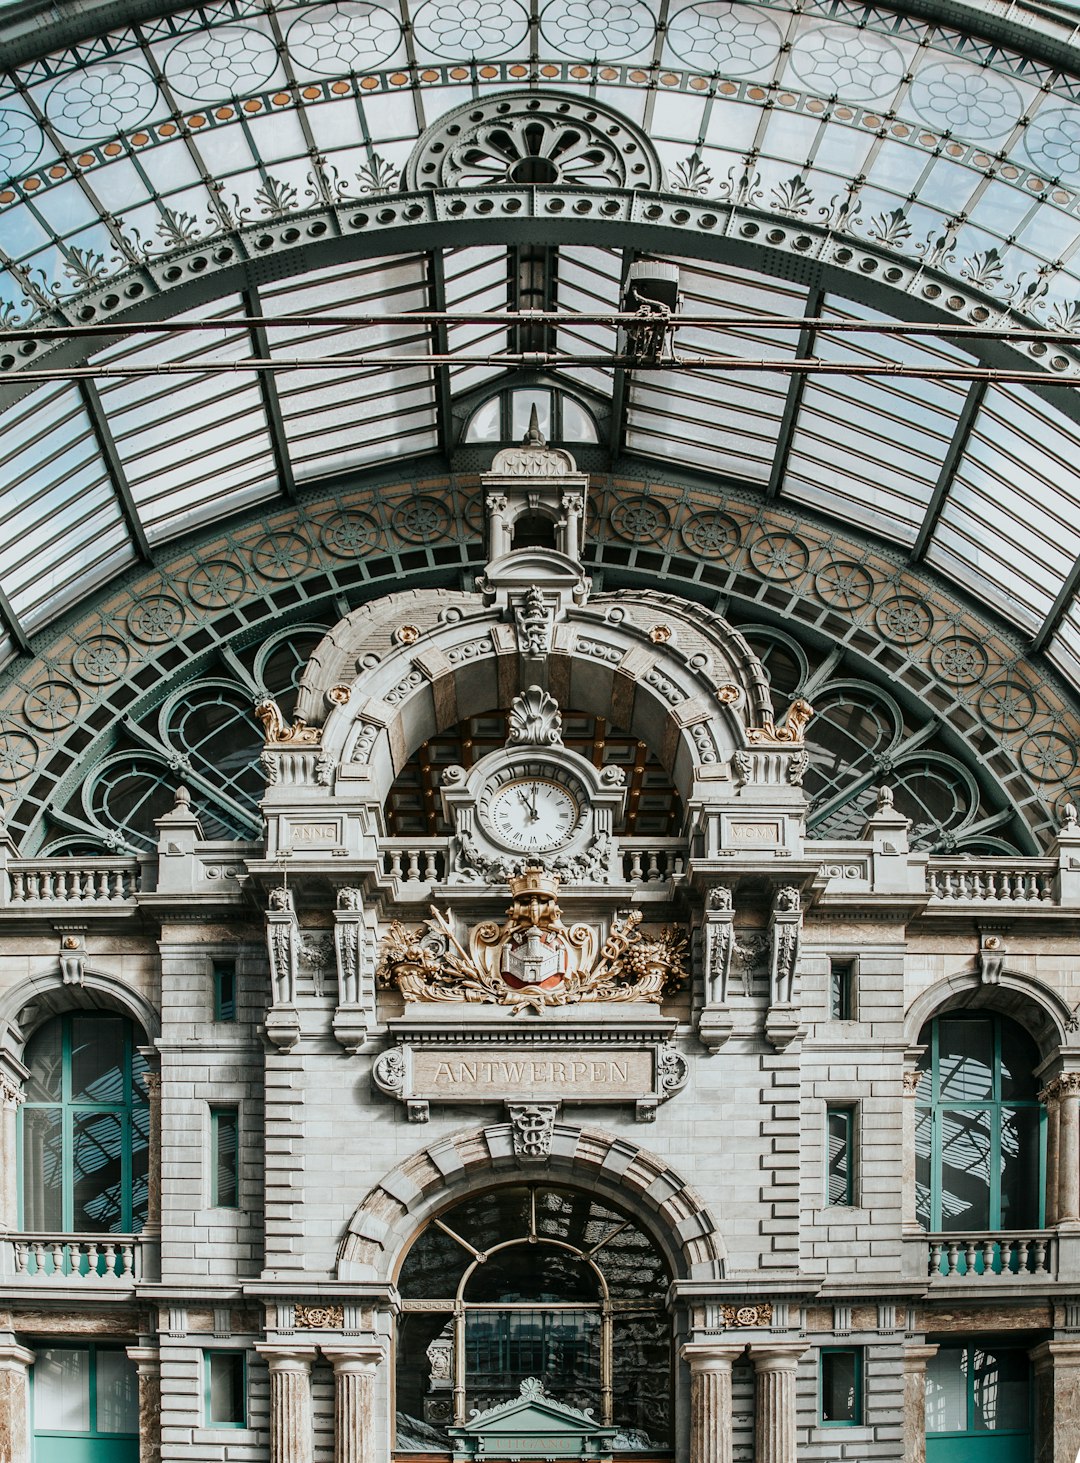 Travel Tips and Stories of Antwerp in Belgium